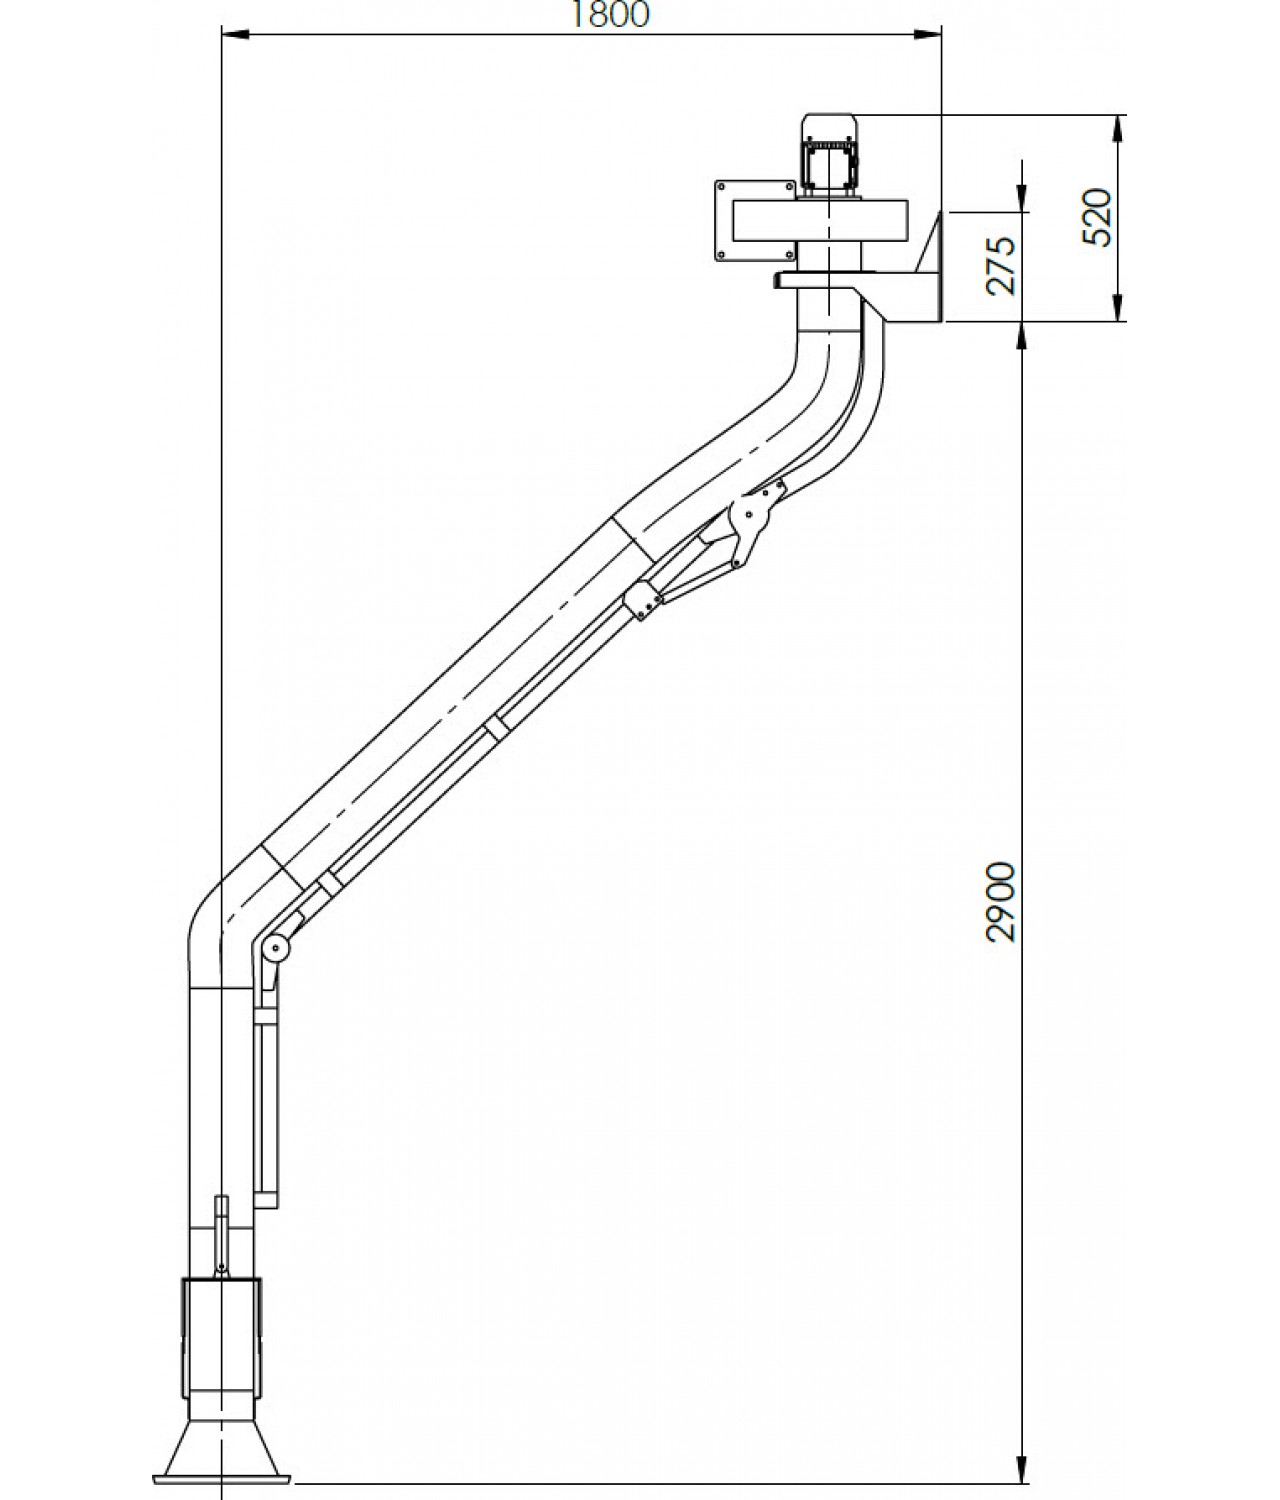 Suvirinimo dujų nutraukimo sistema SDNS-055 ≤1000 m³/h - brėžinys Nr.4